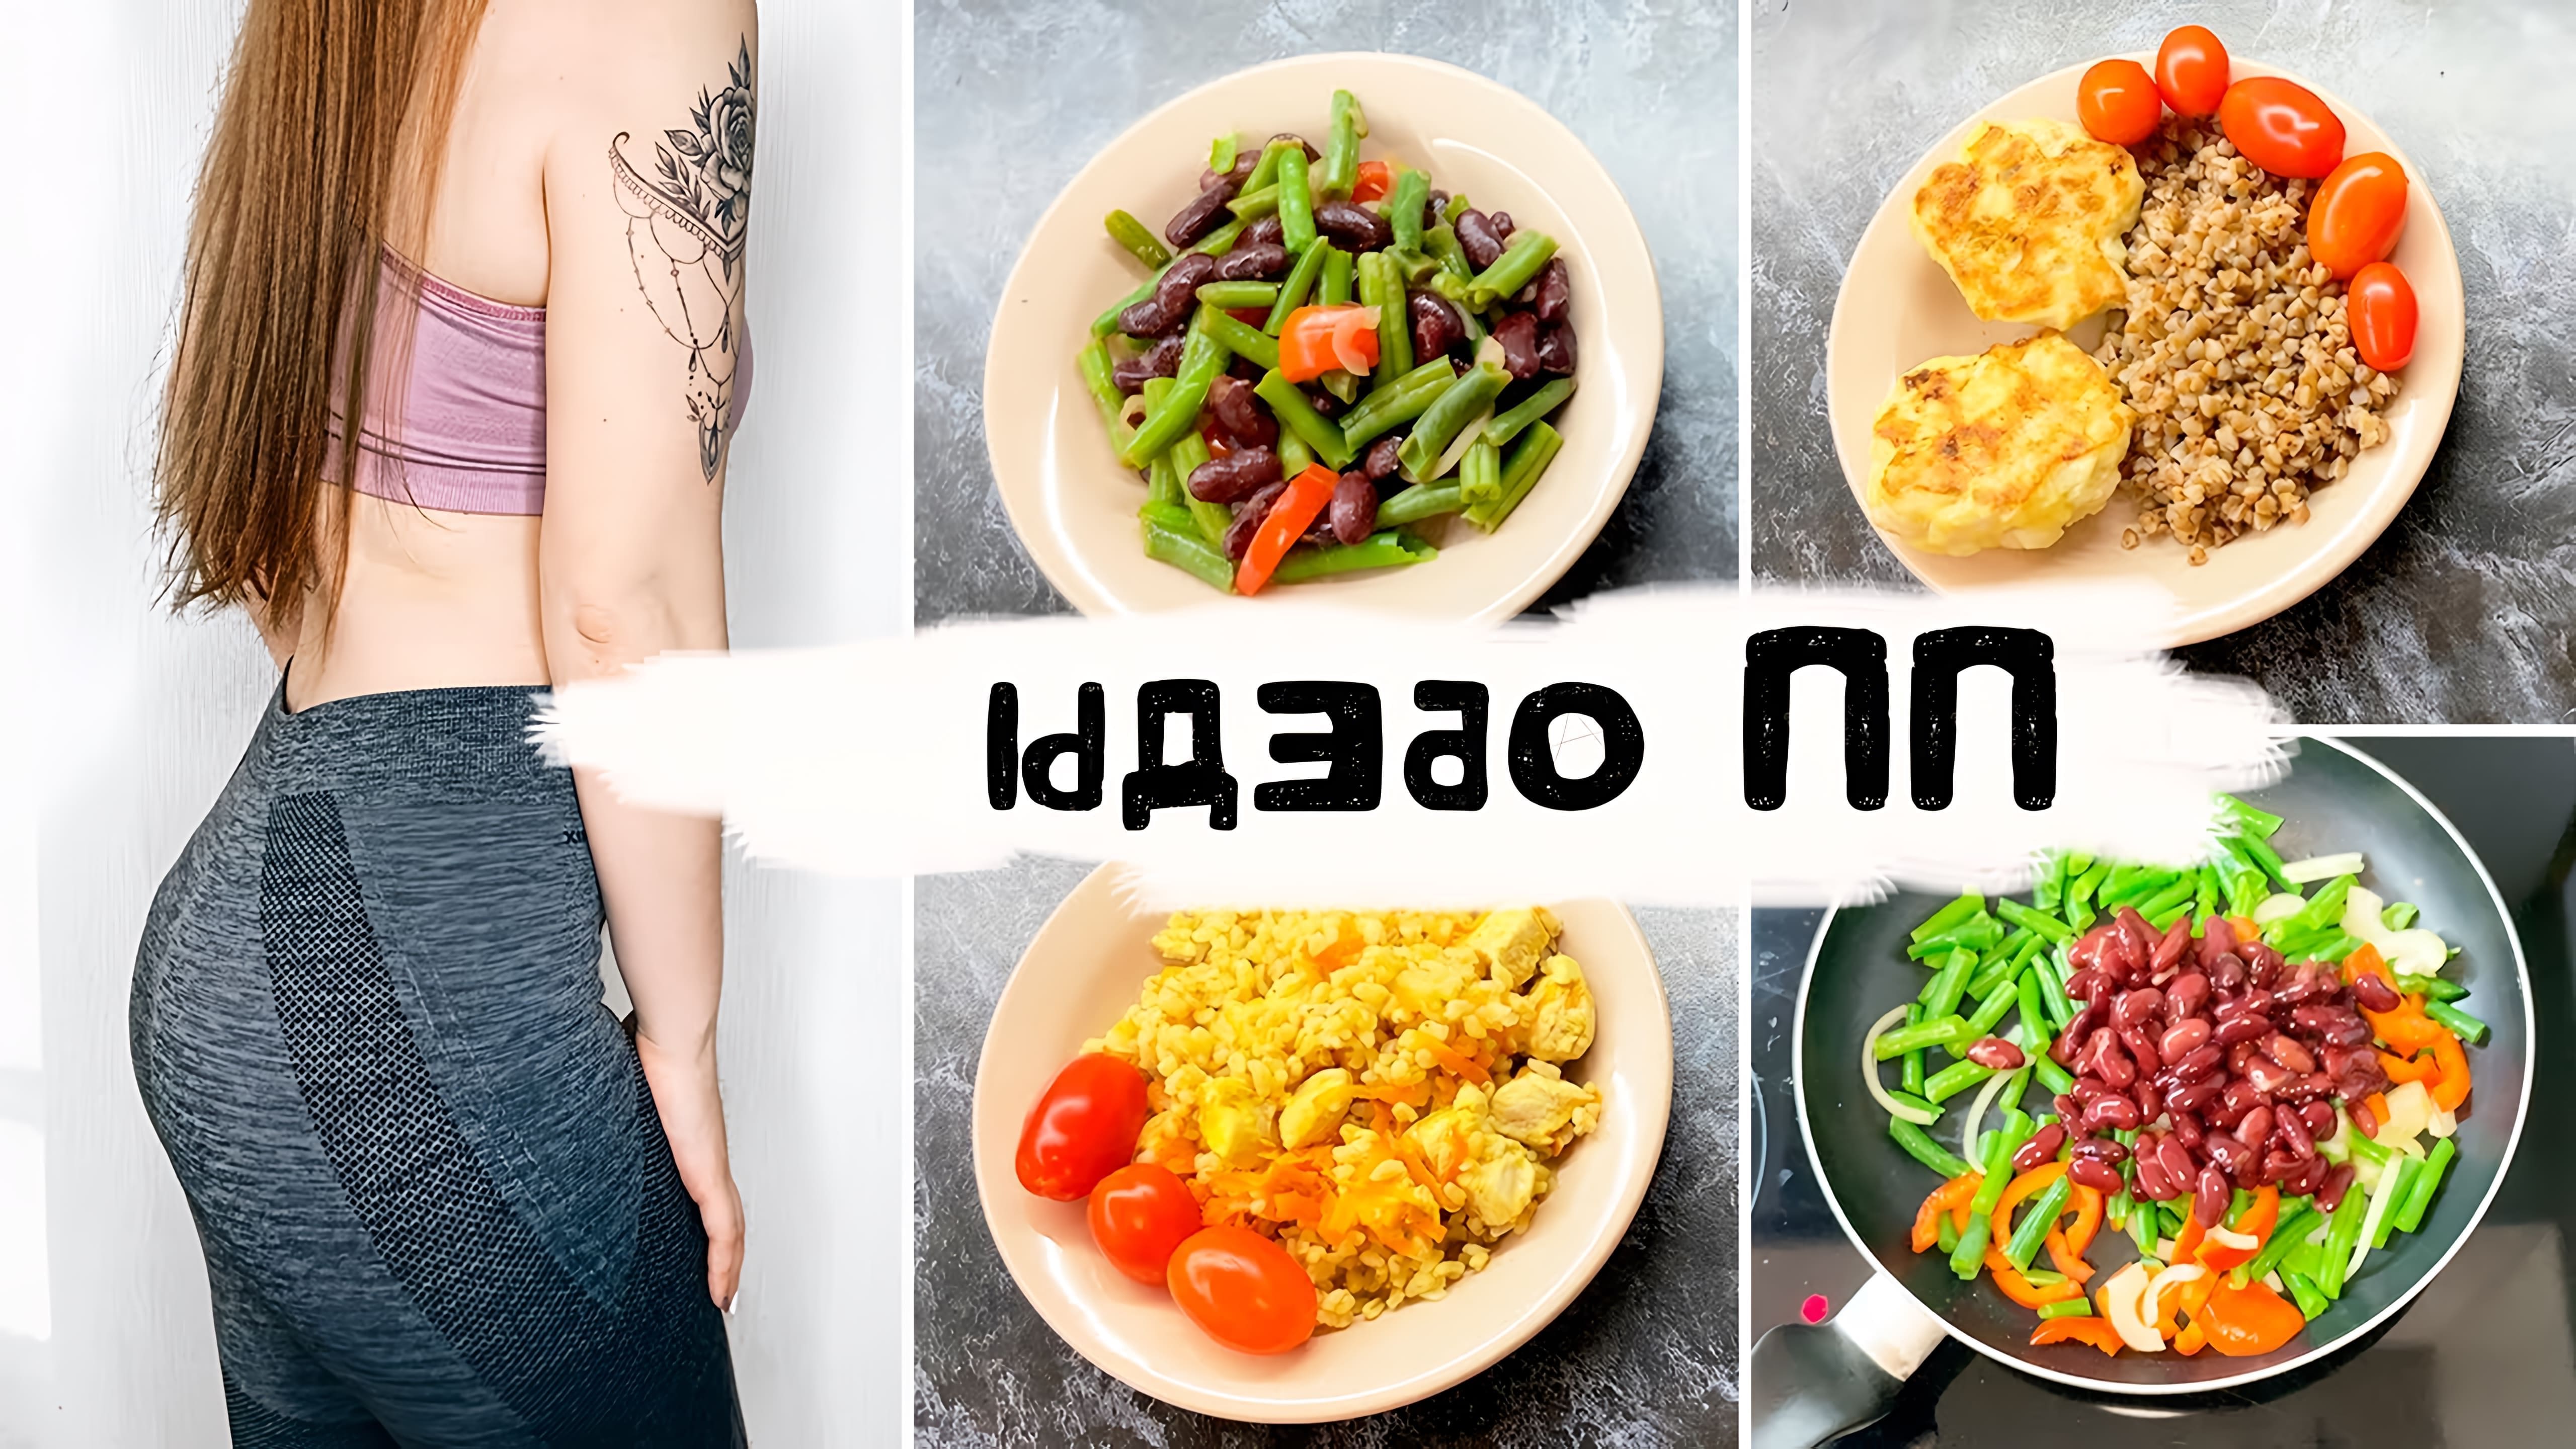 В этом видео рассказывается о том, как правильно составить обед для похудения или поддержания здорового образа жизни